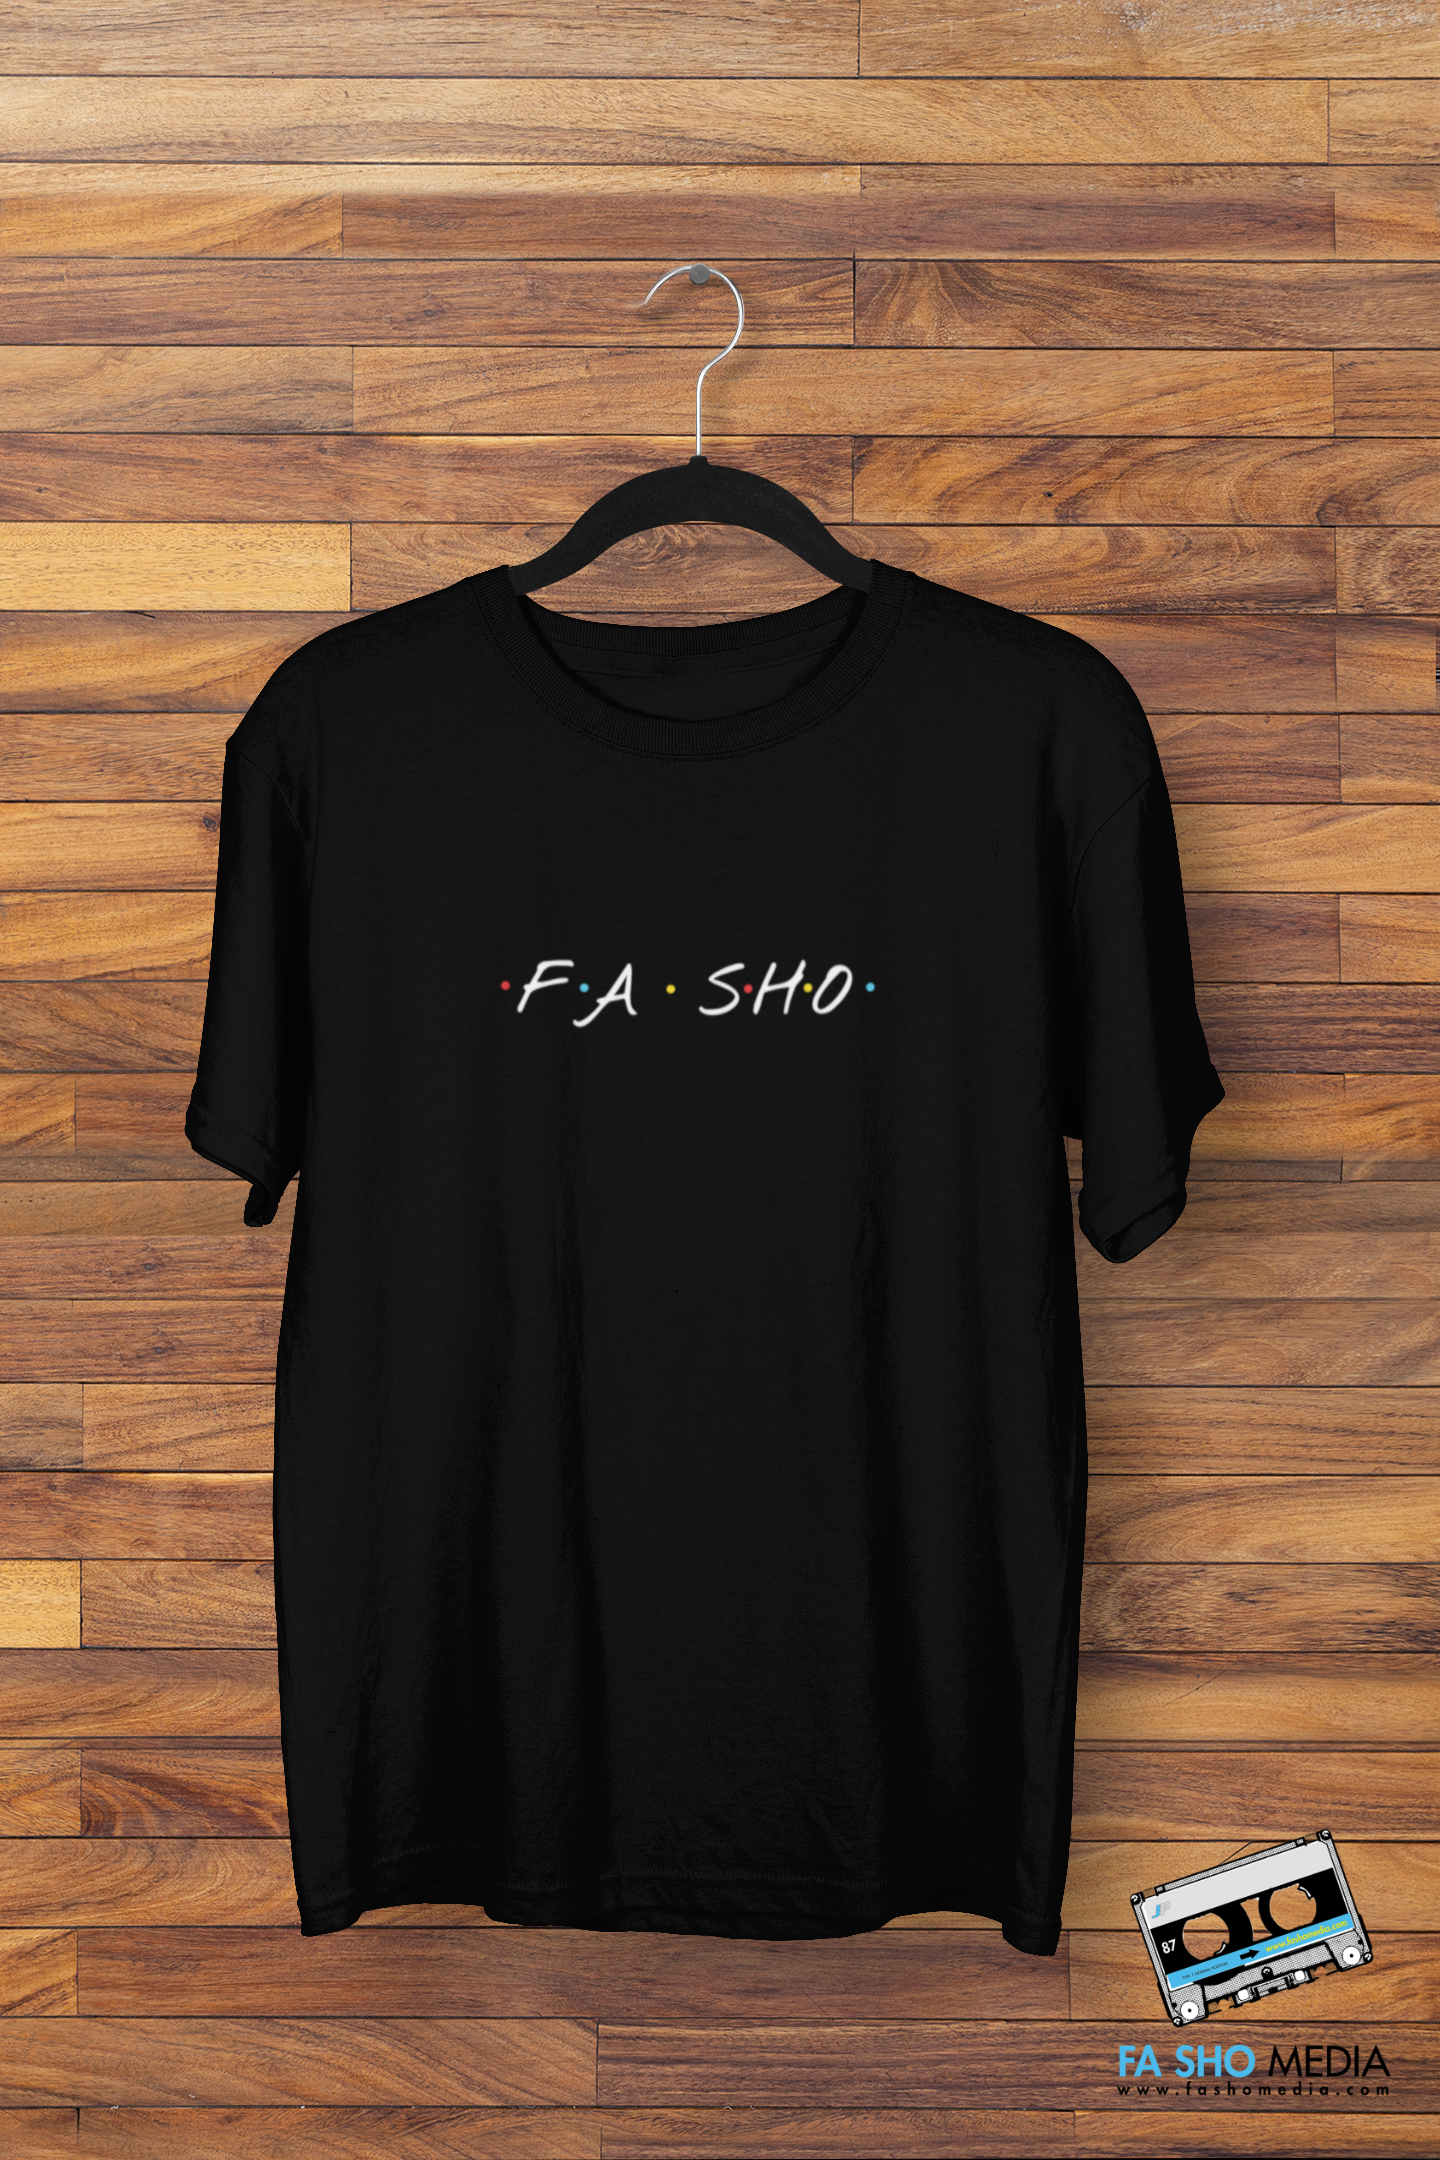 Fa Sho Shirt (Men's)